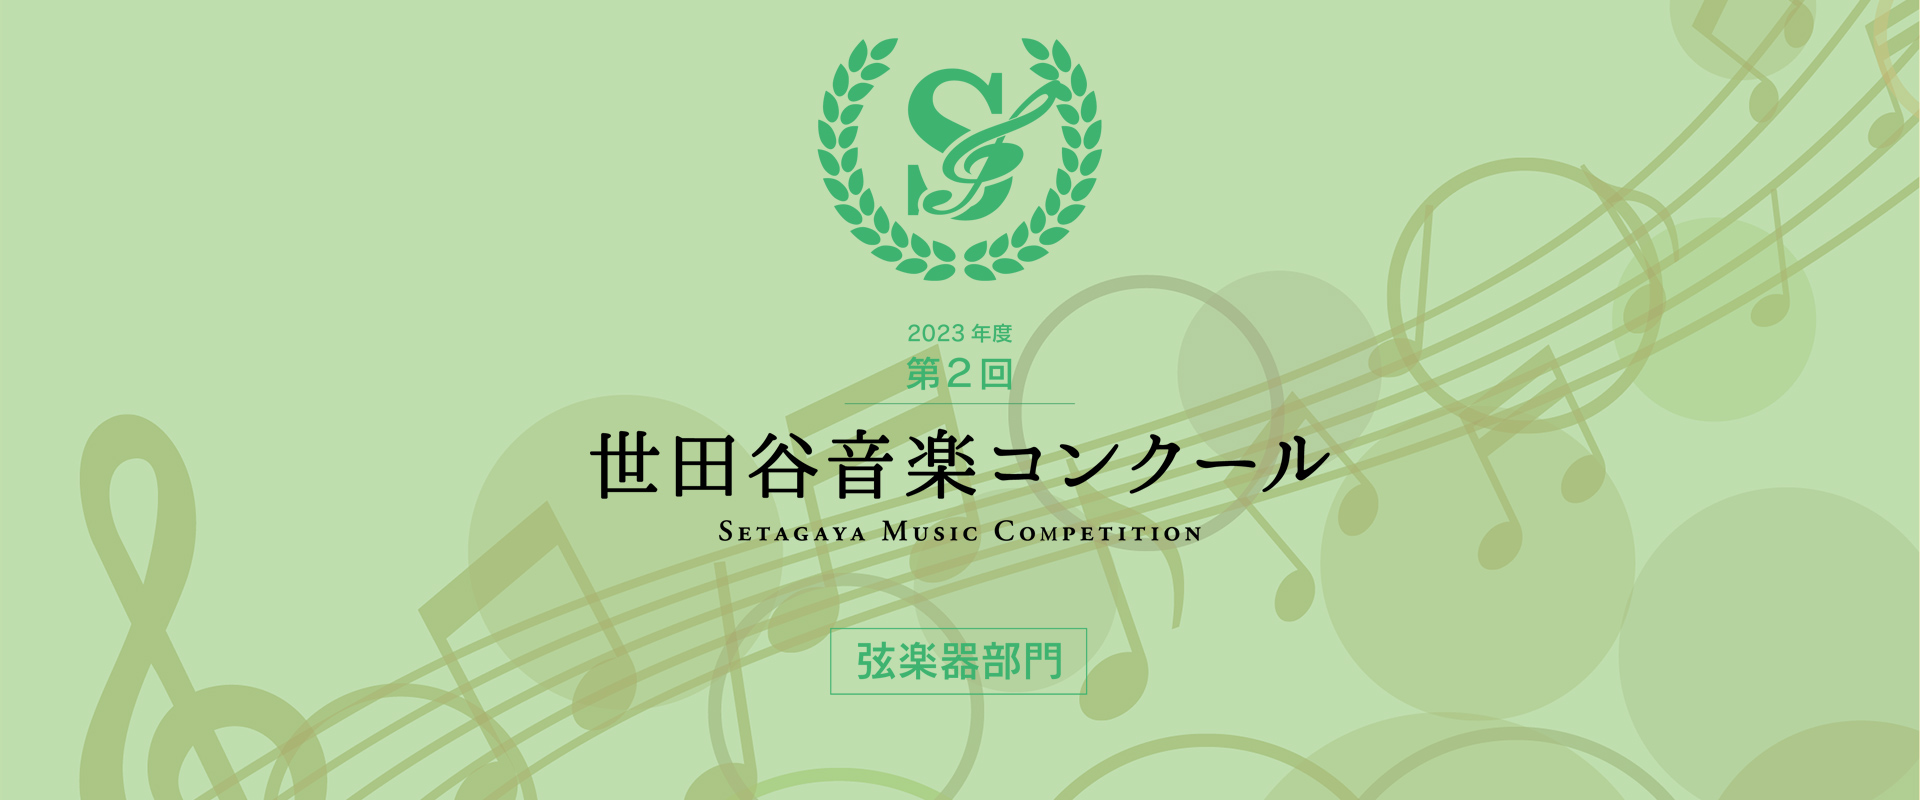 本選申込フォーム – 第2回 世田谷音楽コンクール（弦楽器部門） – Setagaya Music Competition